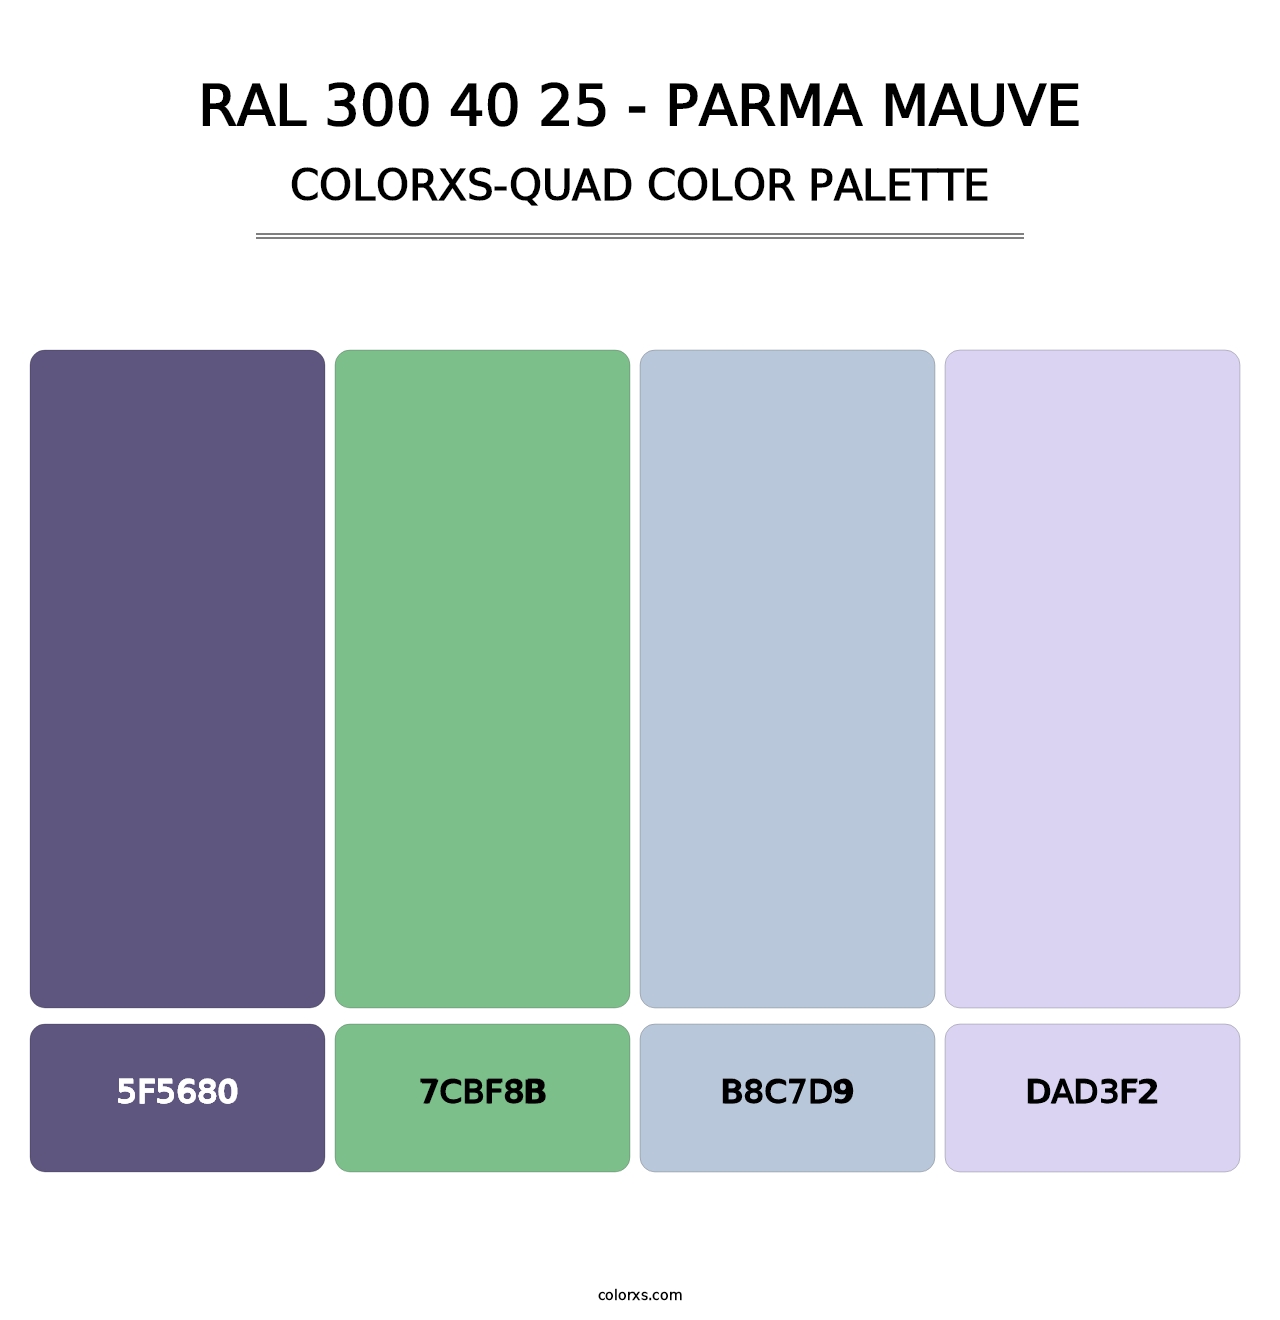 RAL 300 40 25 - Parma Mauve - Colorxs Quad Palette